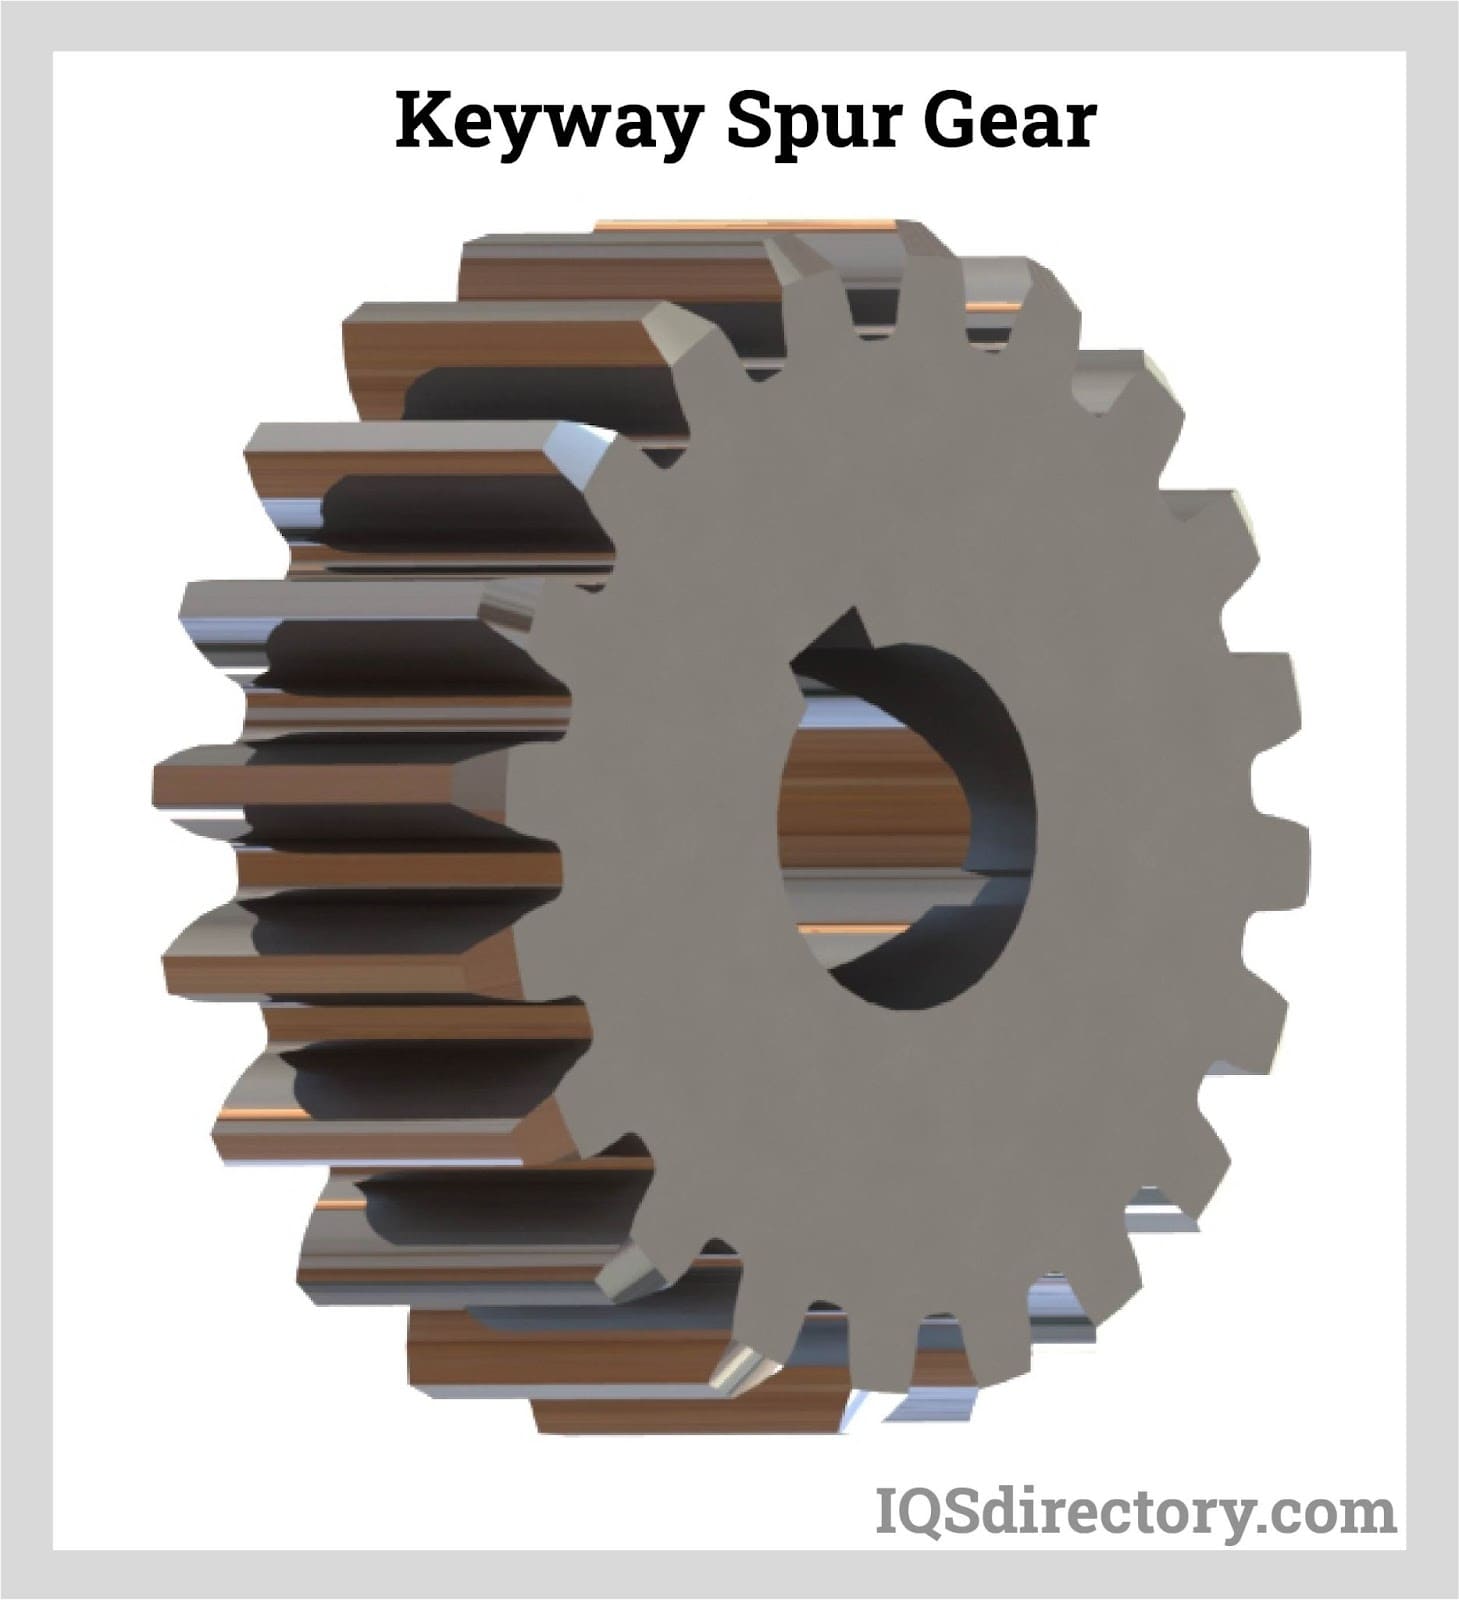 Keyway Spur Gear